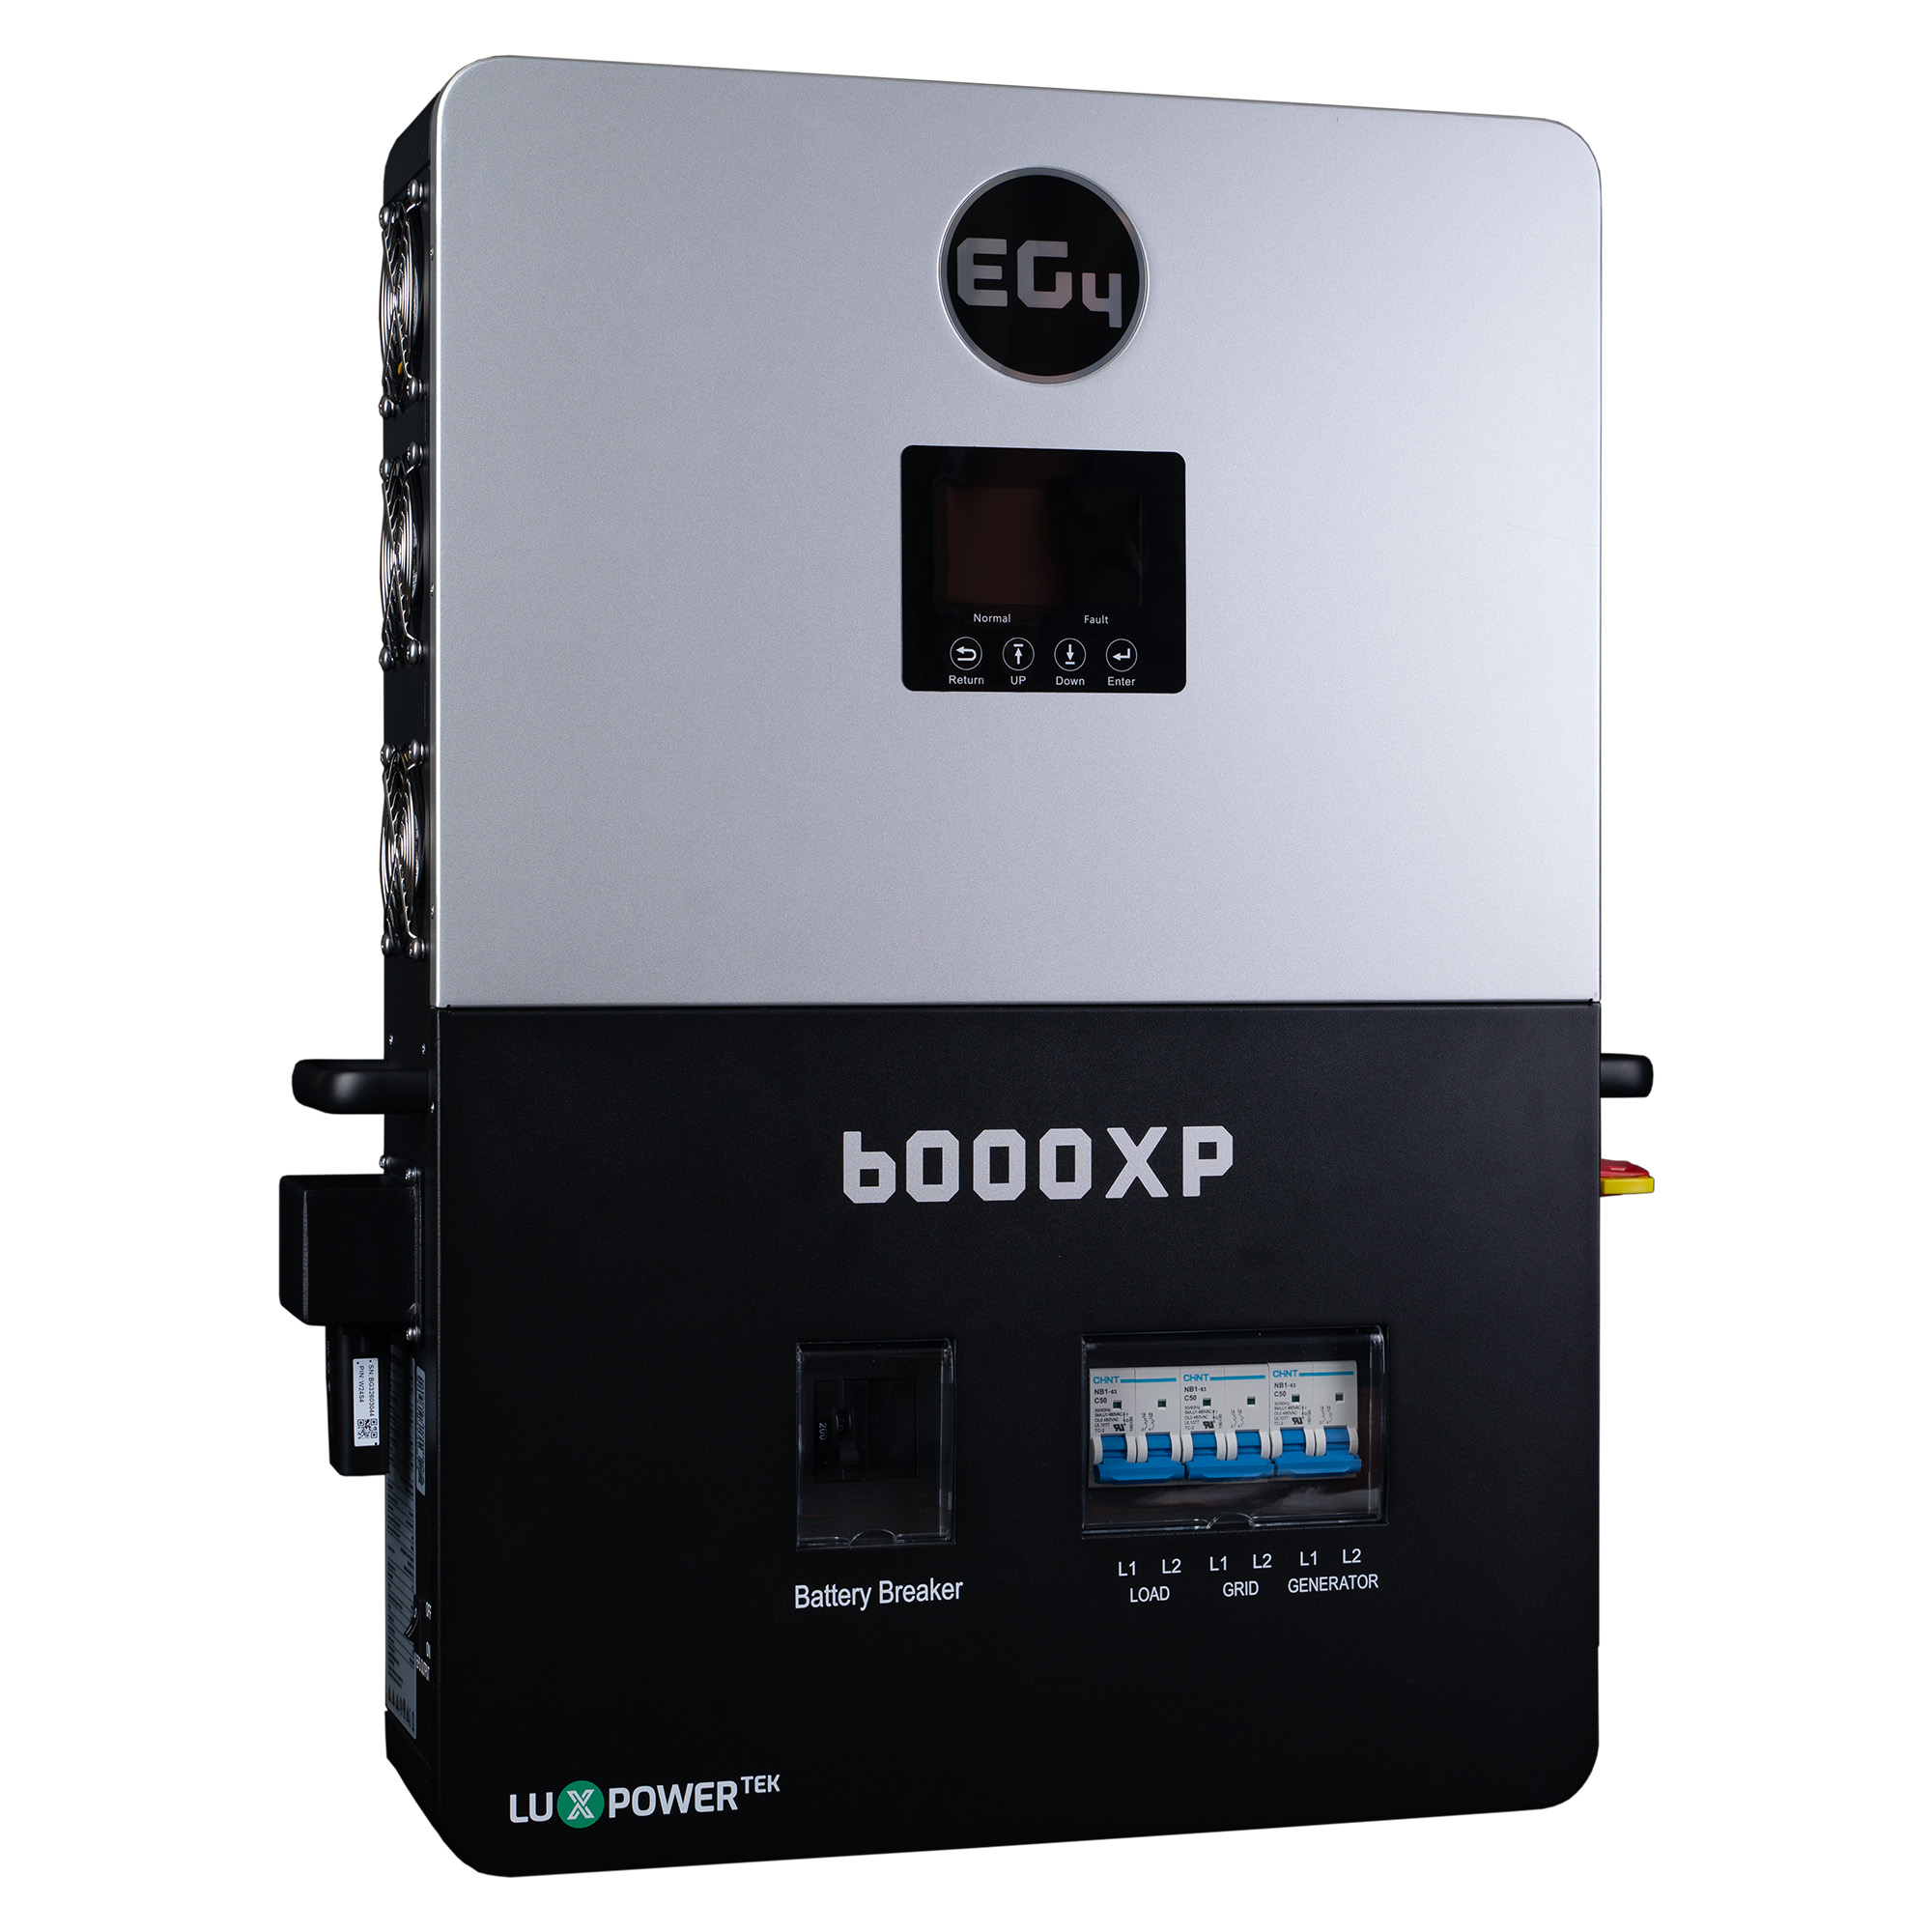 EG4 6000XP Off-Grid Inverter, 8000W PV Input, 6000W Output, 480V VOC  Input, 48V 120/240V Split Phase